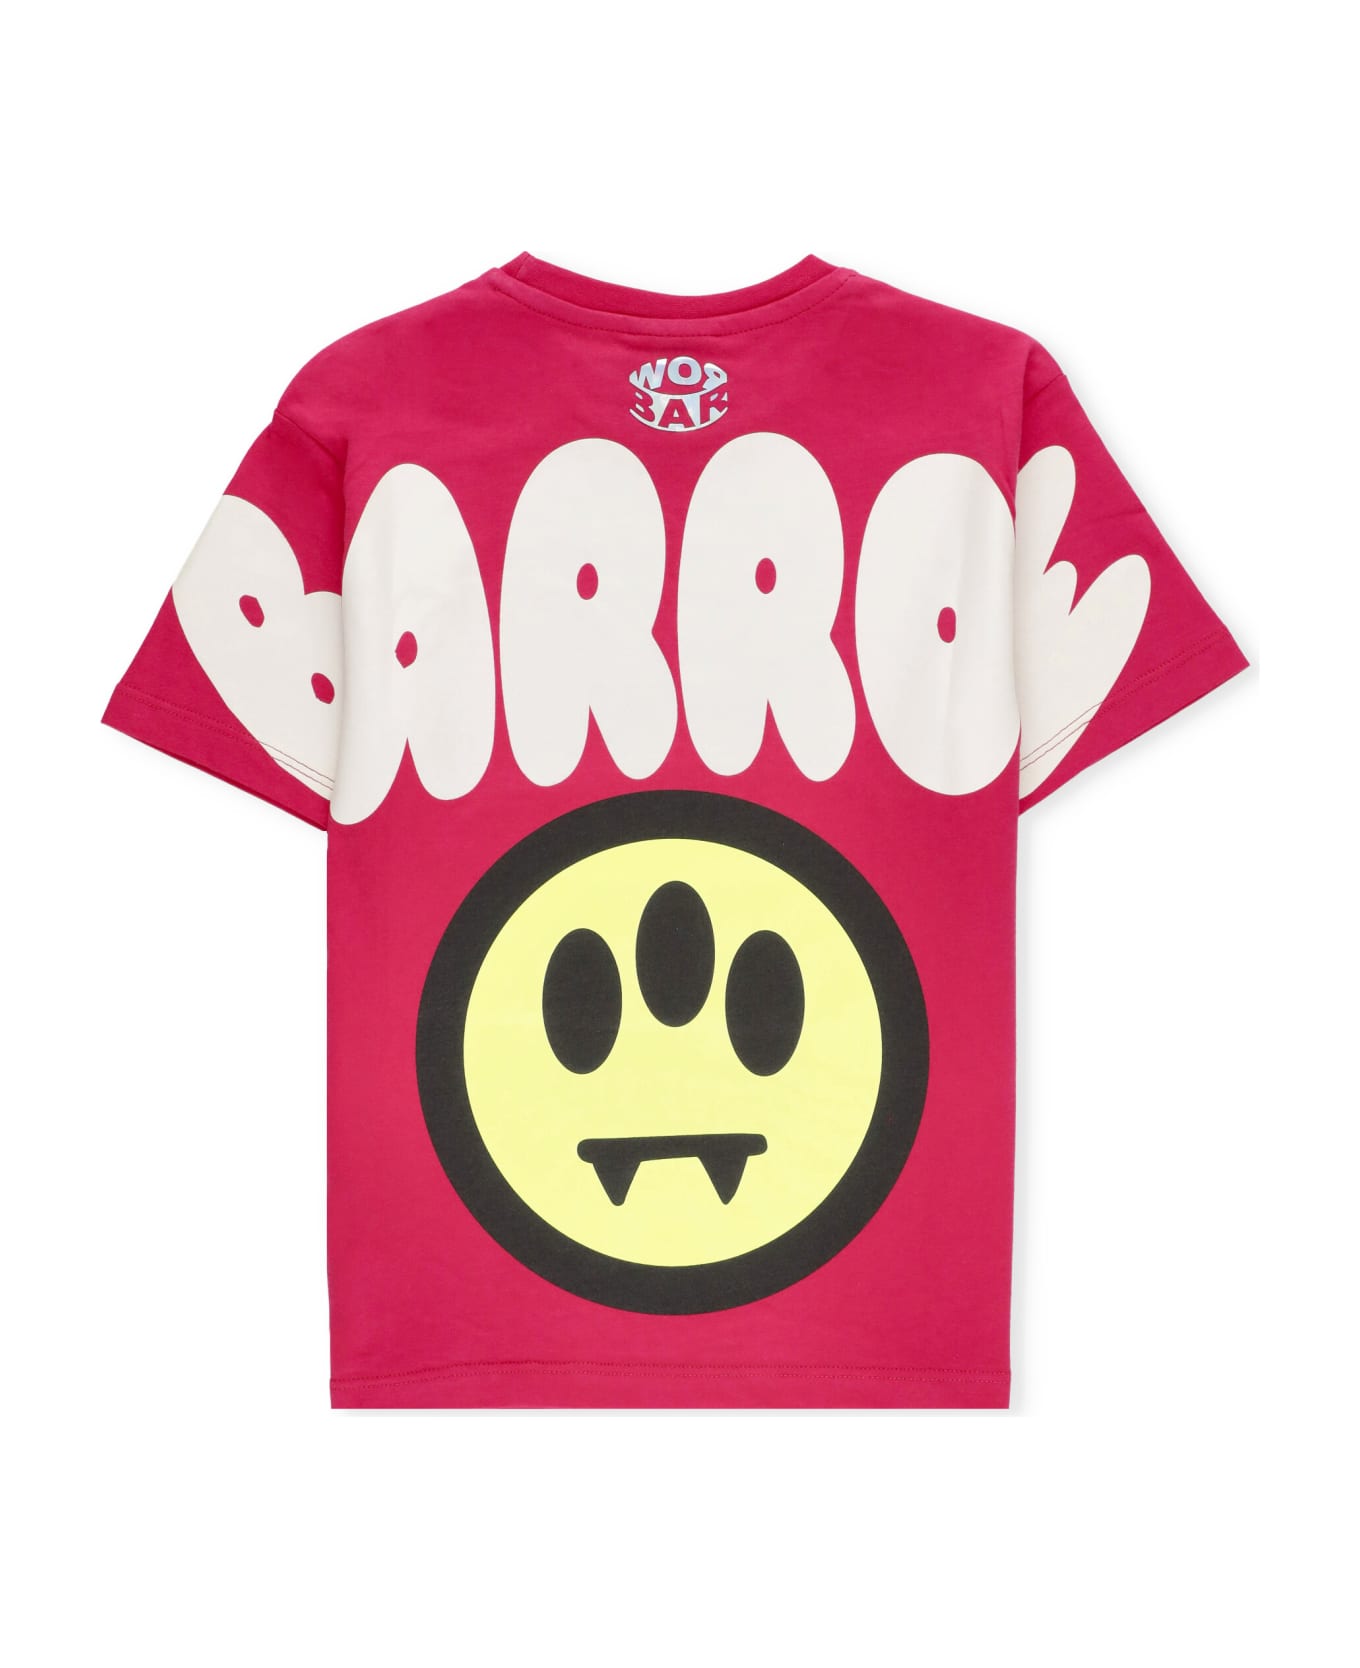 Barrow Logoed T-shirt - Fuchsia